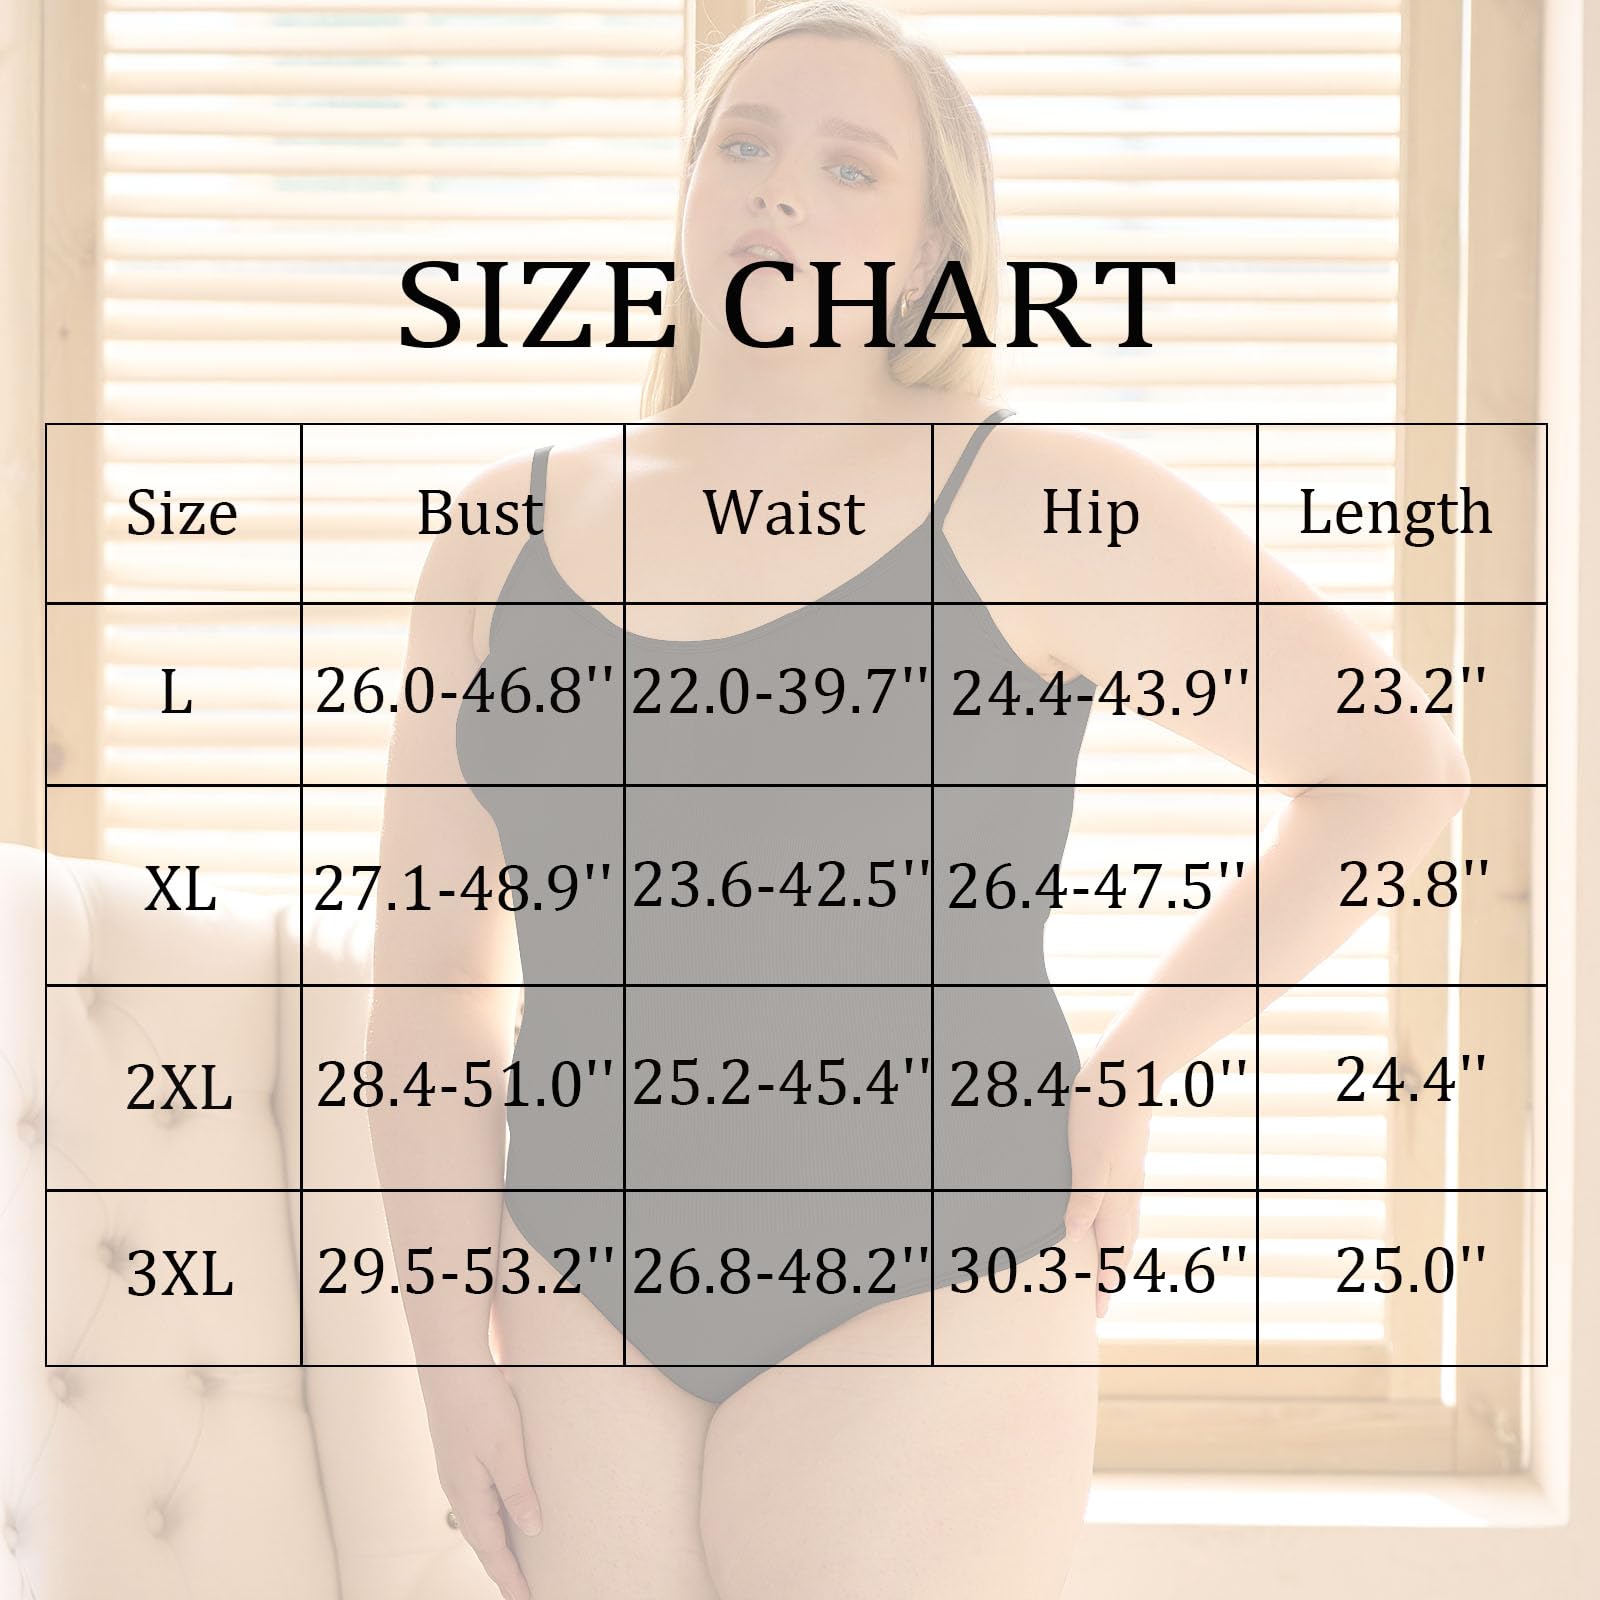 Sleeveless Slick Plus Size Bodysuit for Women